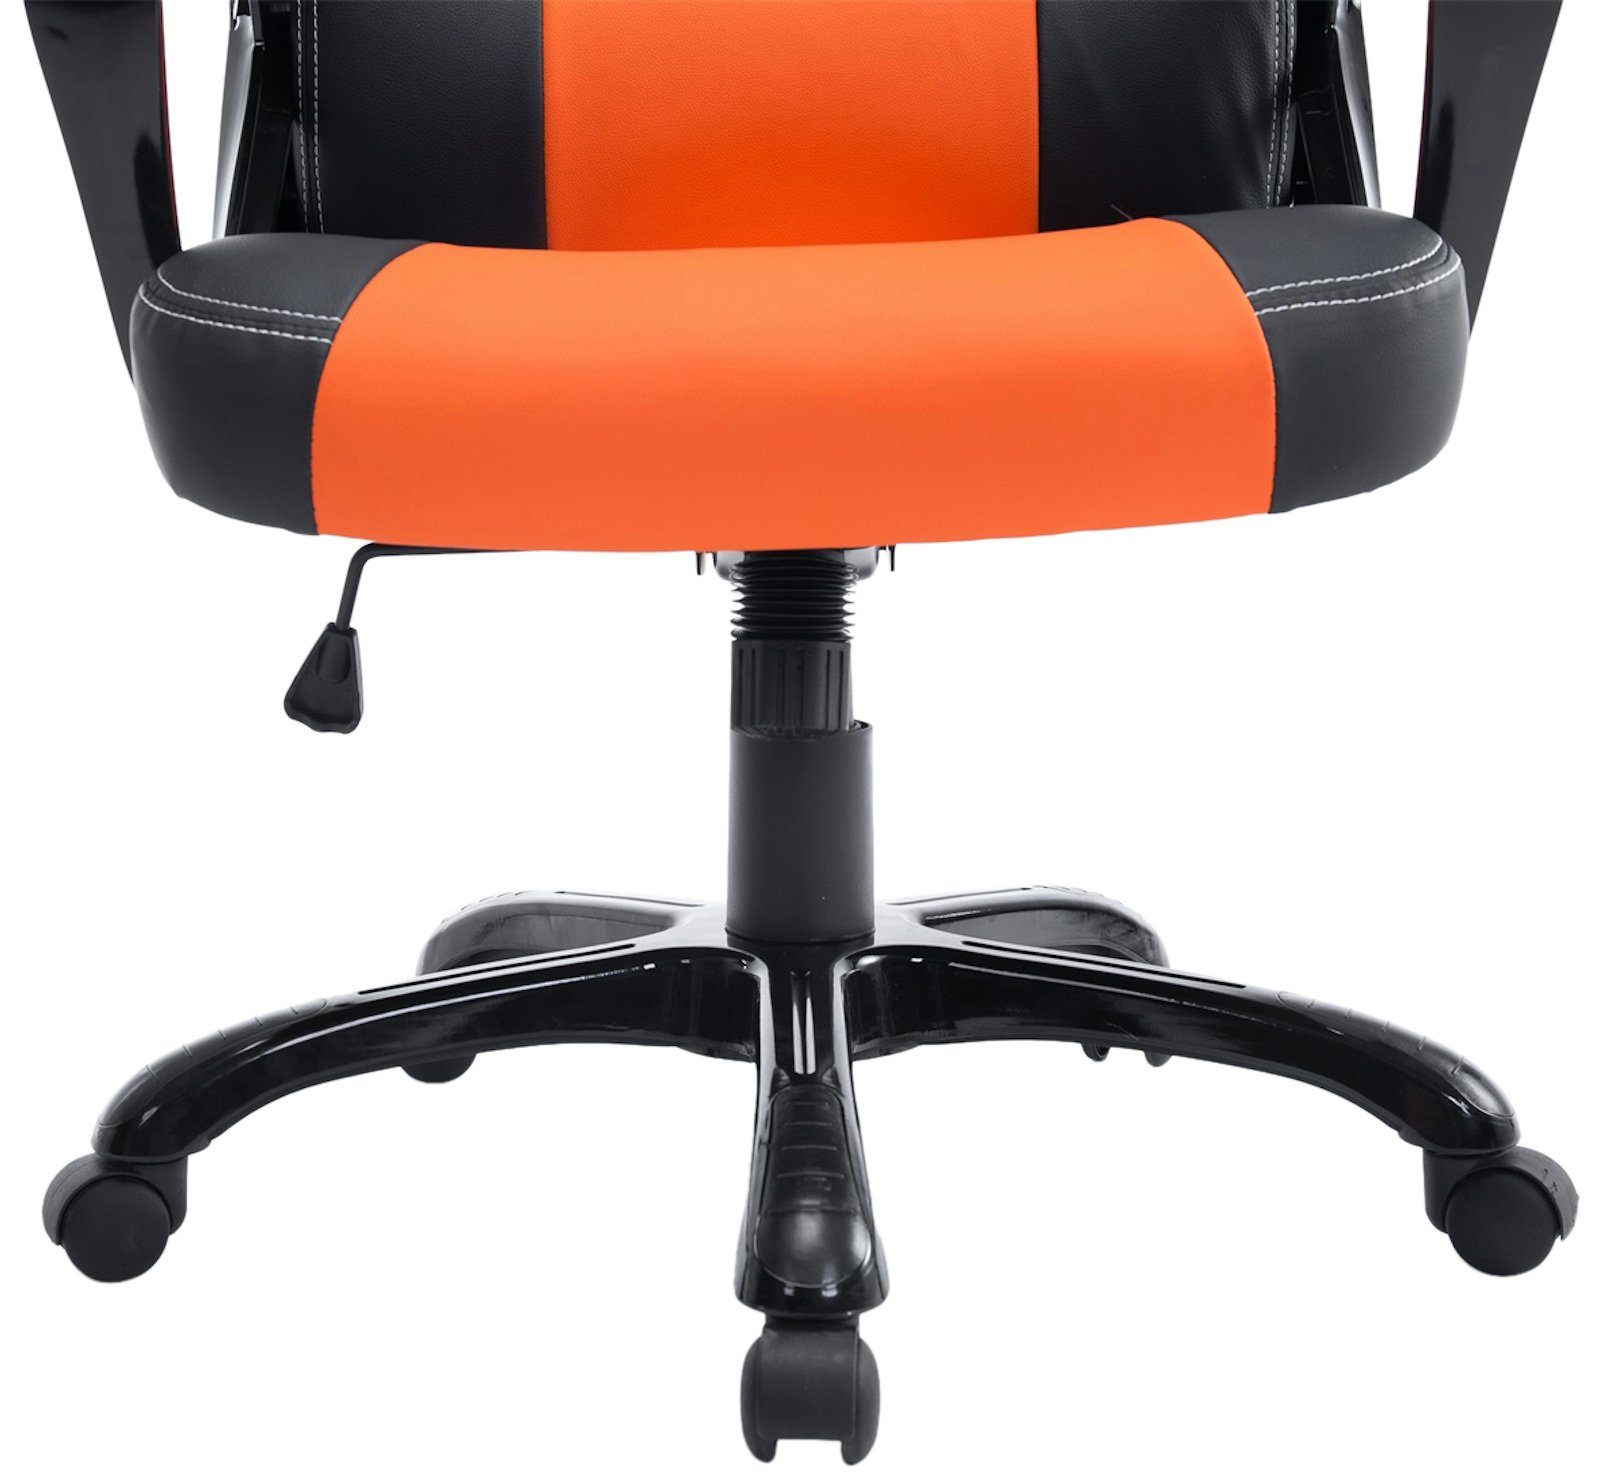 schwarz/orange drehbar Höhenverstellung Pedro, Gaming Chair CLP mit